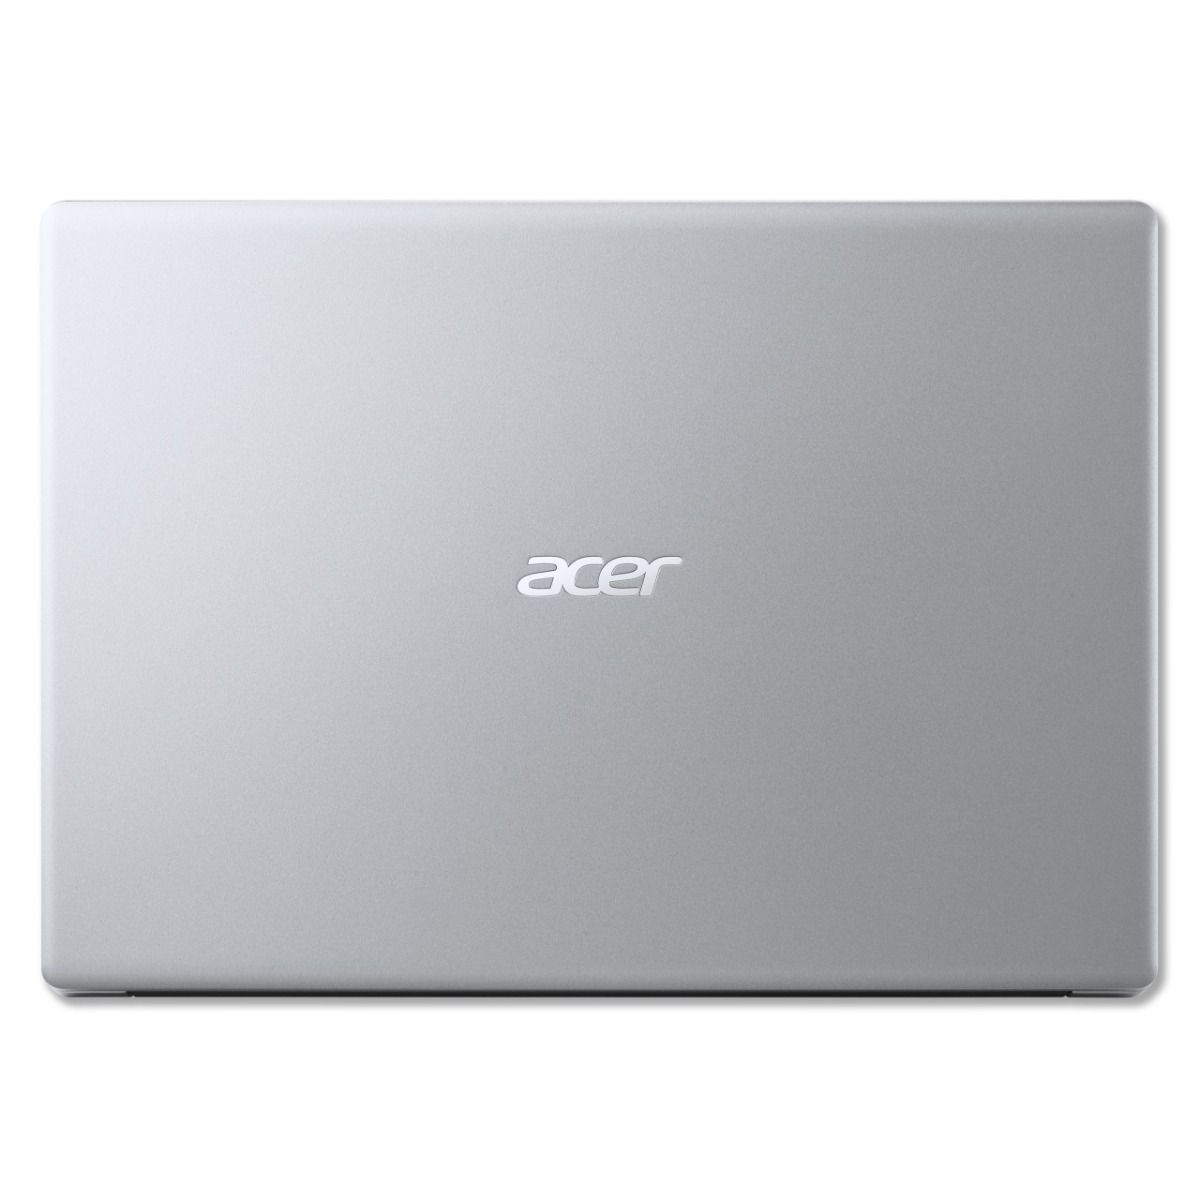  Acer Laptop Aspire 1 A114-33 14" HD Intel Celeron N4500 4GB RAM 64GB Storage #A